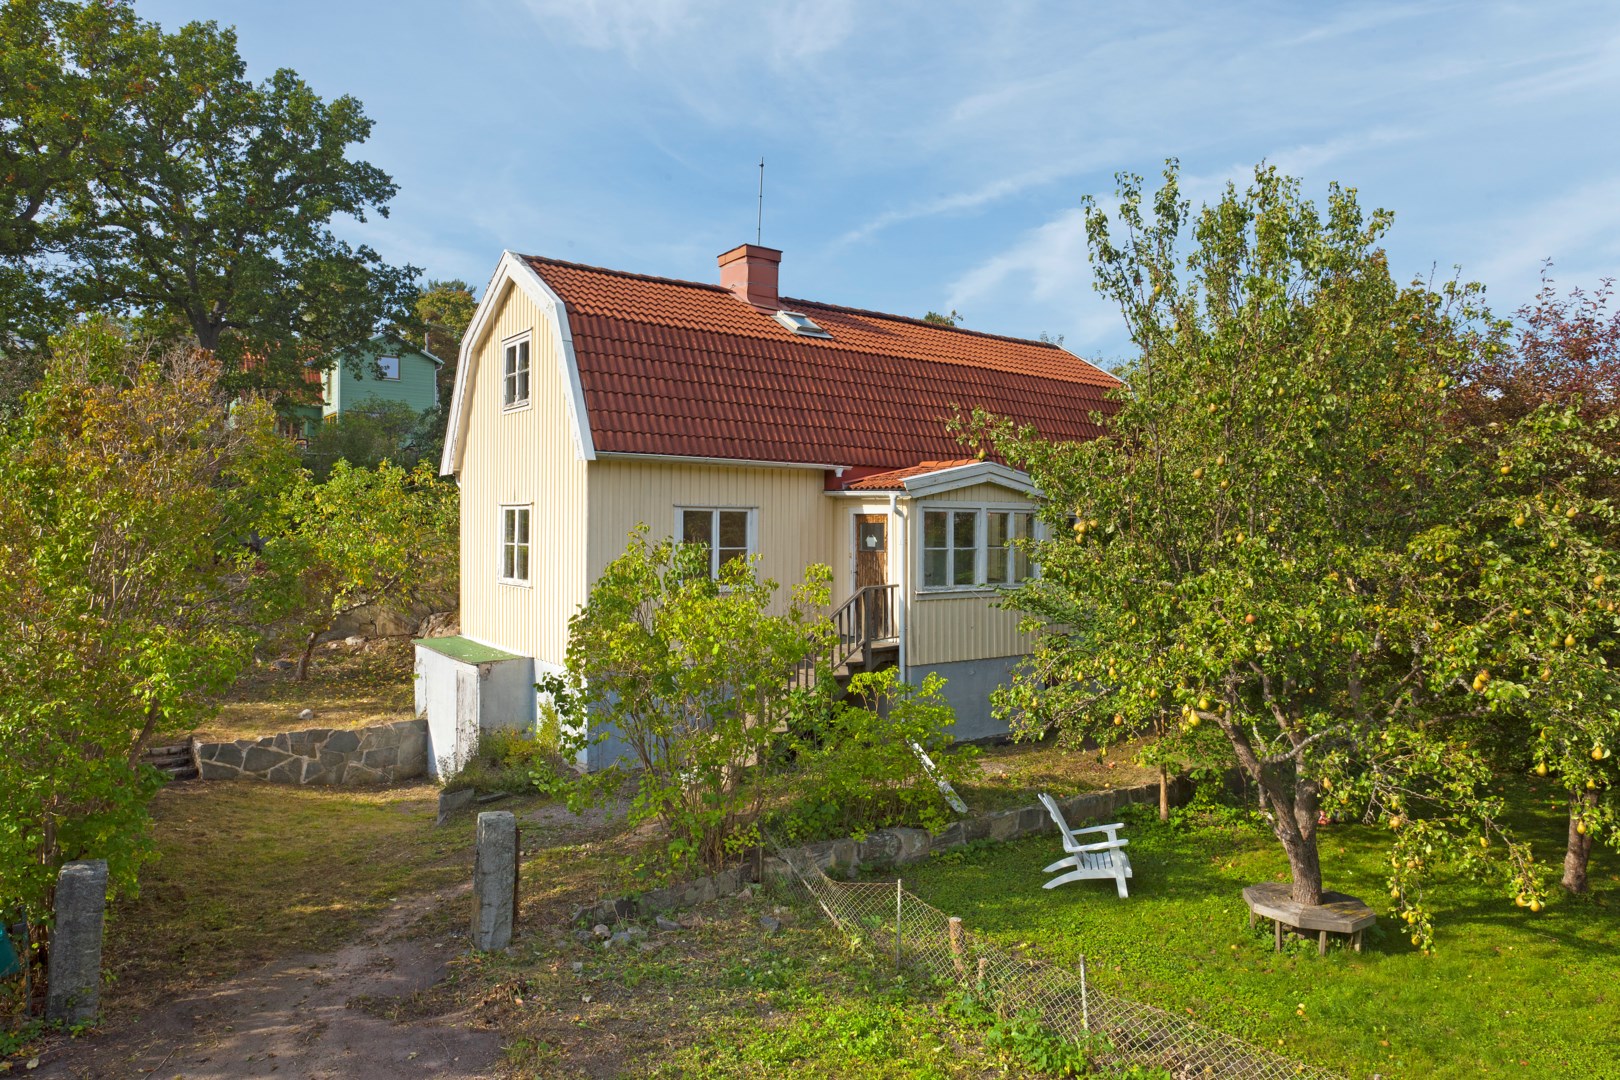 Bostadsbild från Djupdalsvägen 55, Såld i Bromma - Höglandet, Stockholm